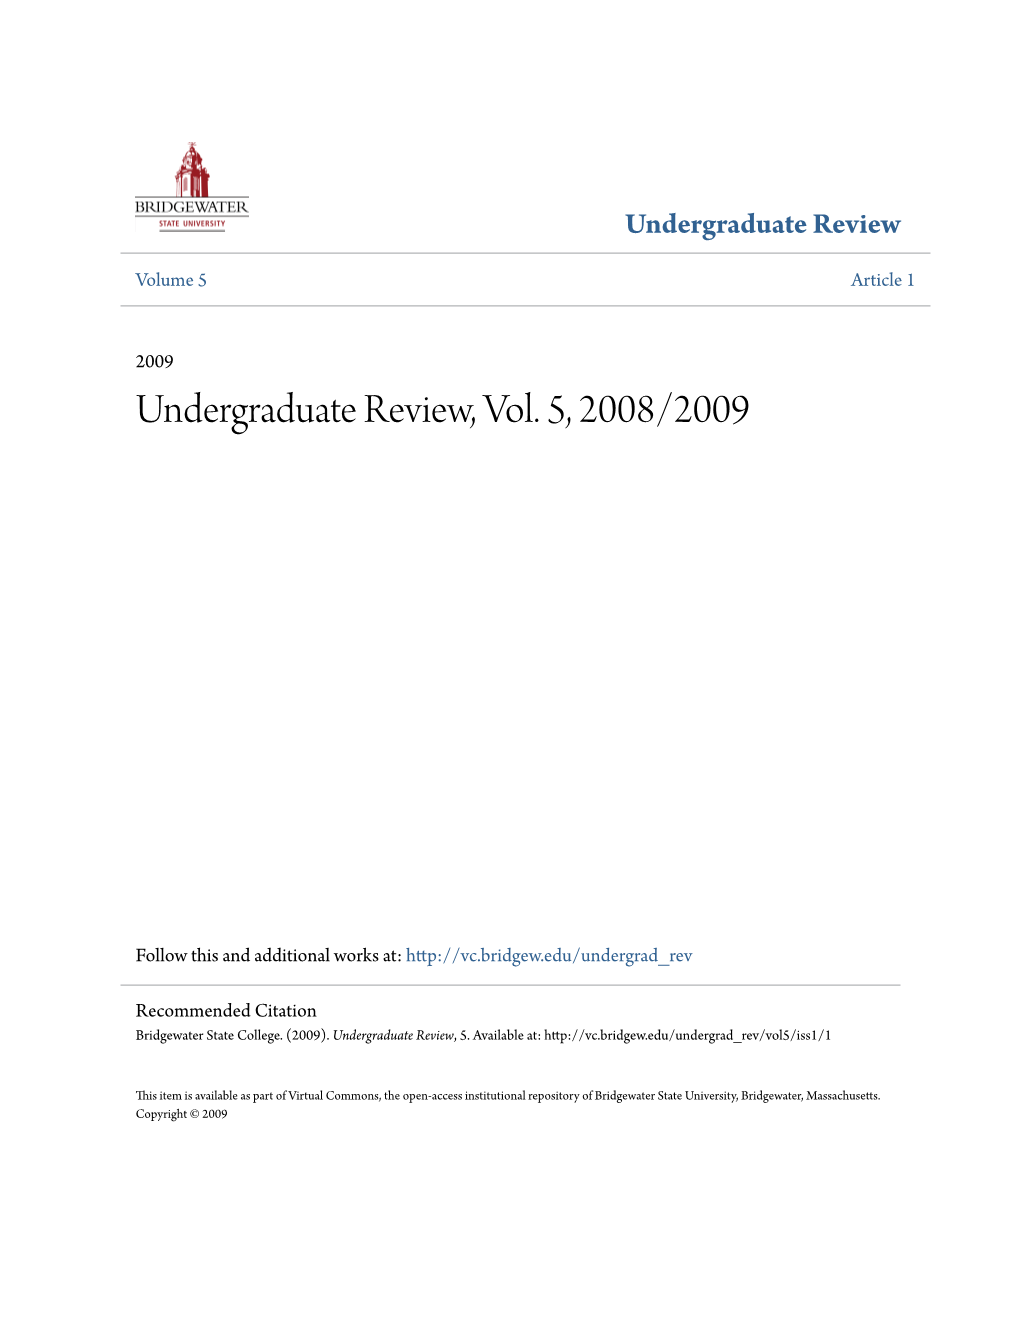 Undergraduate Review, Vol. 5, 2008/2009